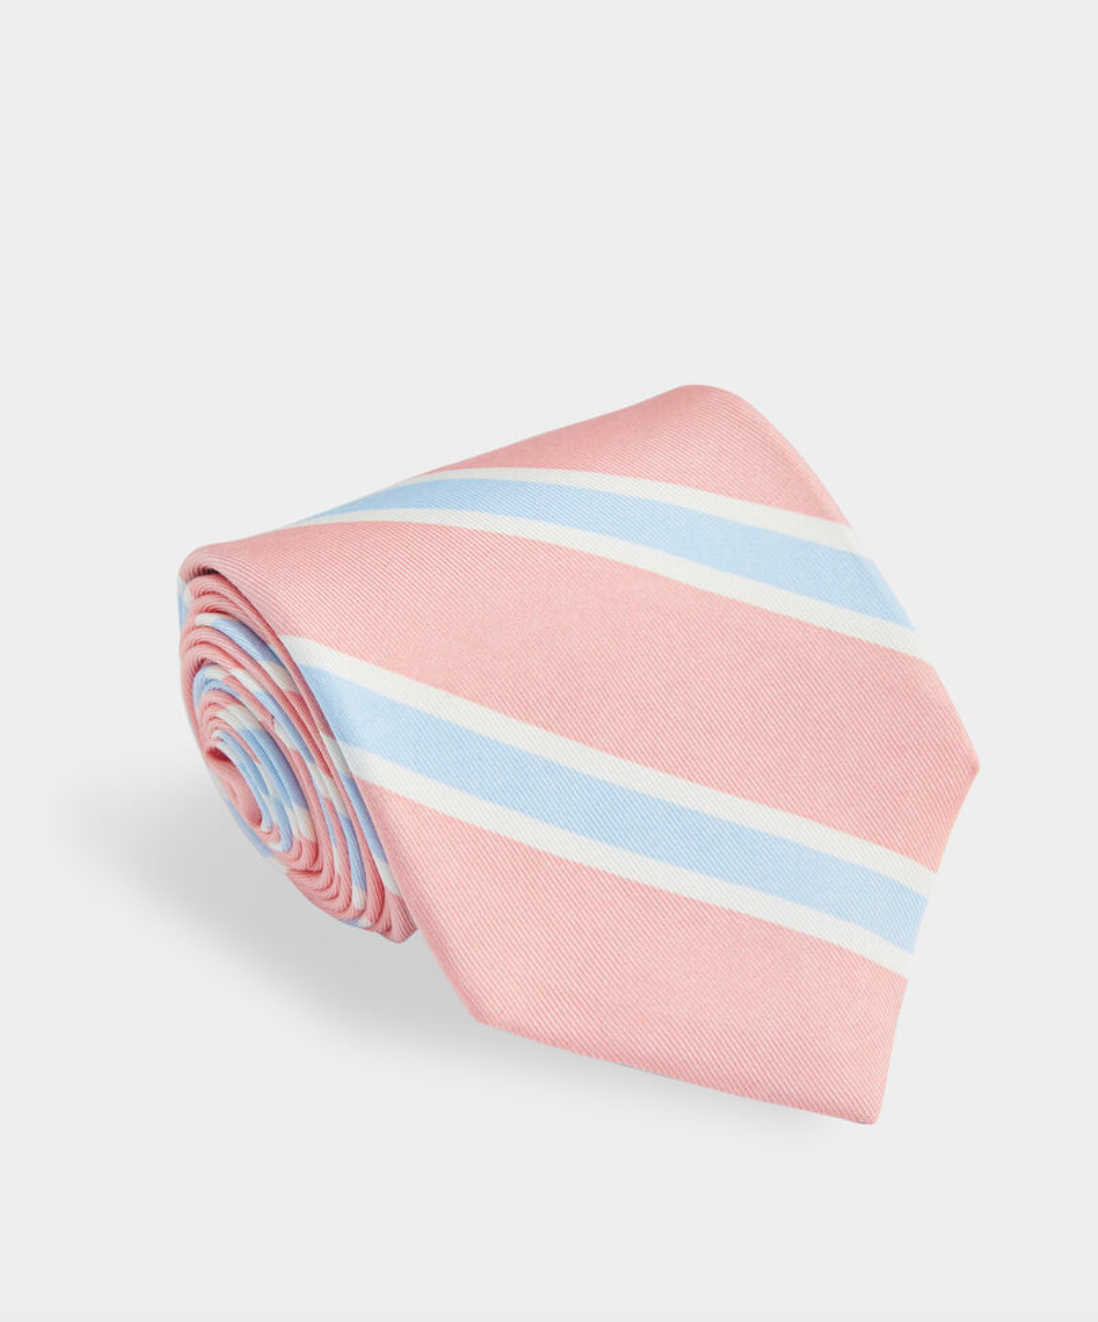 Bedford Stripe Printed Tie